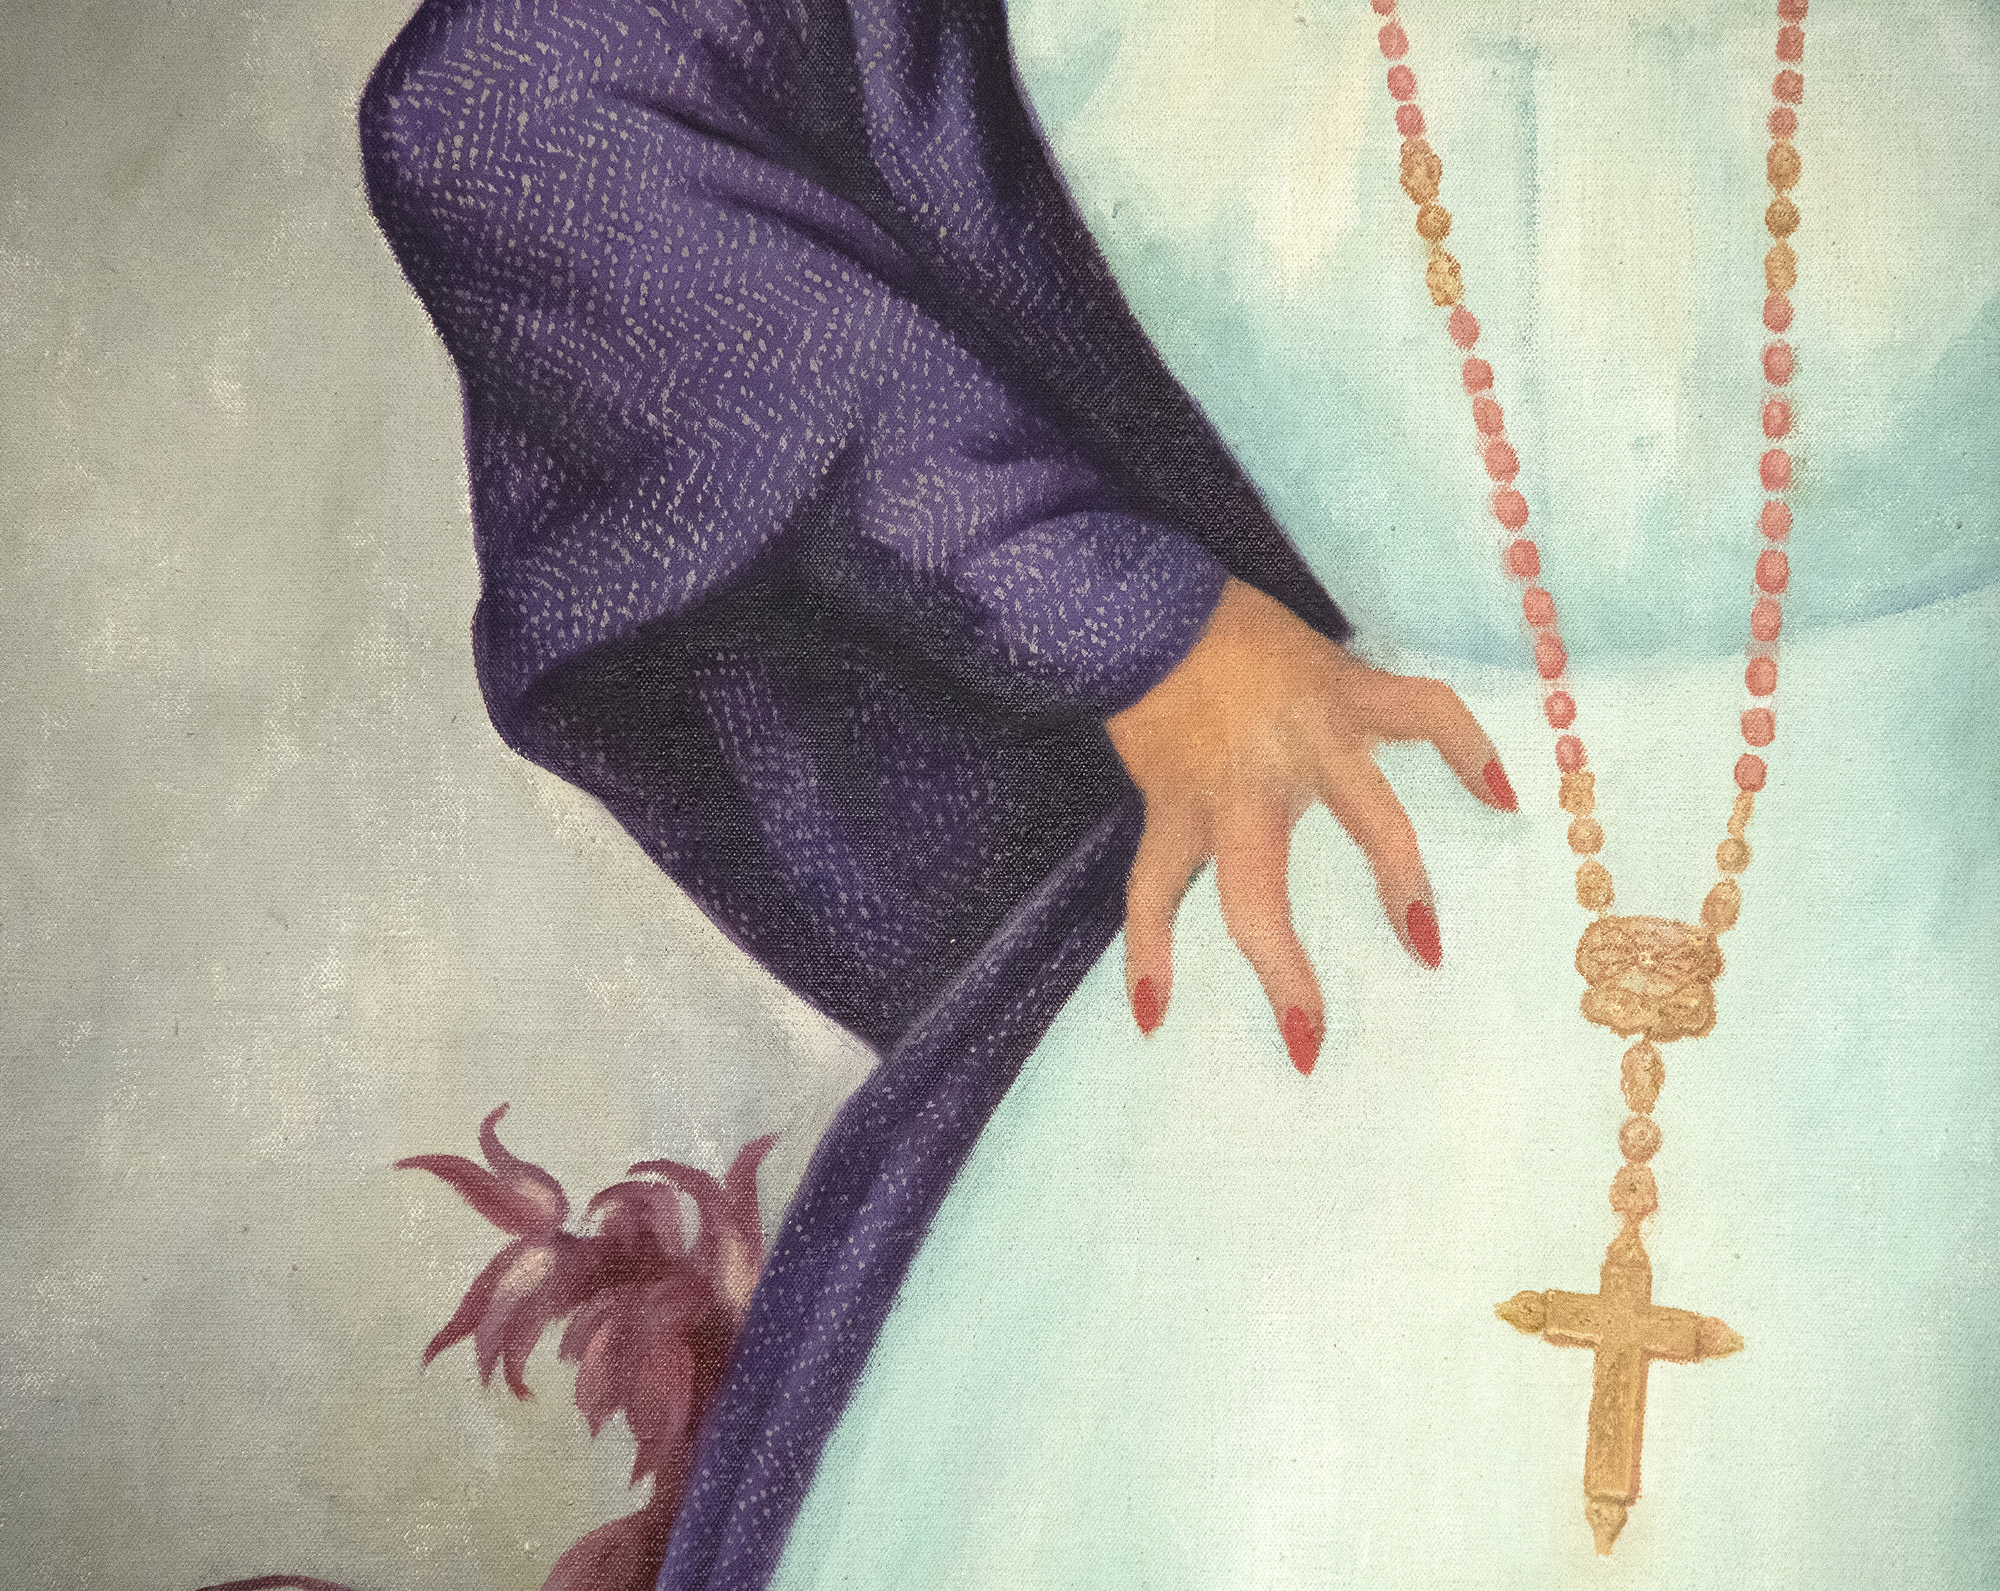 دييغو ريفيرا -- صورة انريكيتا G. دافيلا -- النفط على قماش -- 79 1 / 8 × 48 3 / 8 في.